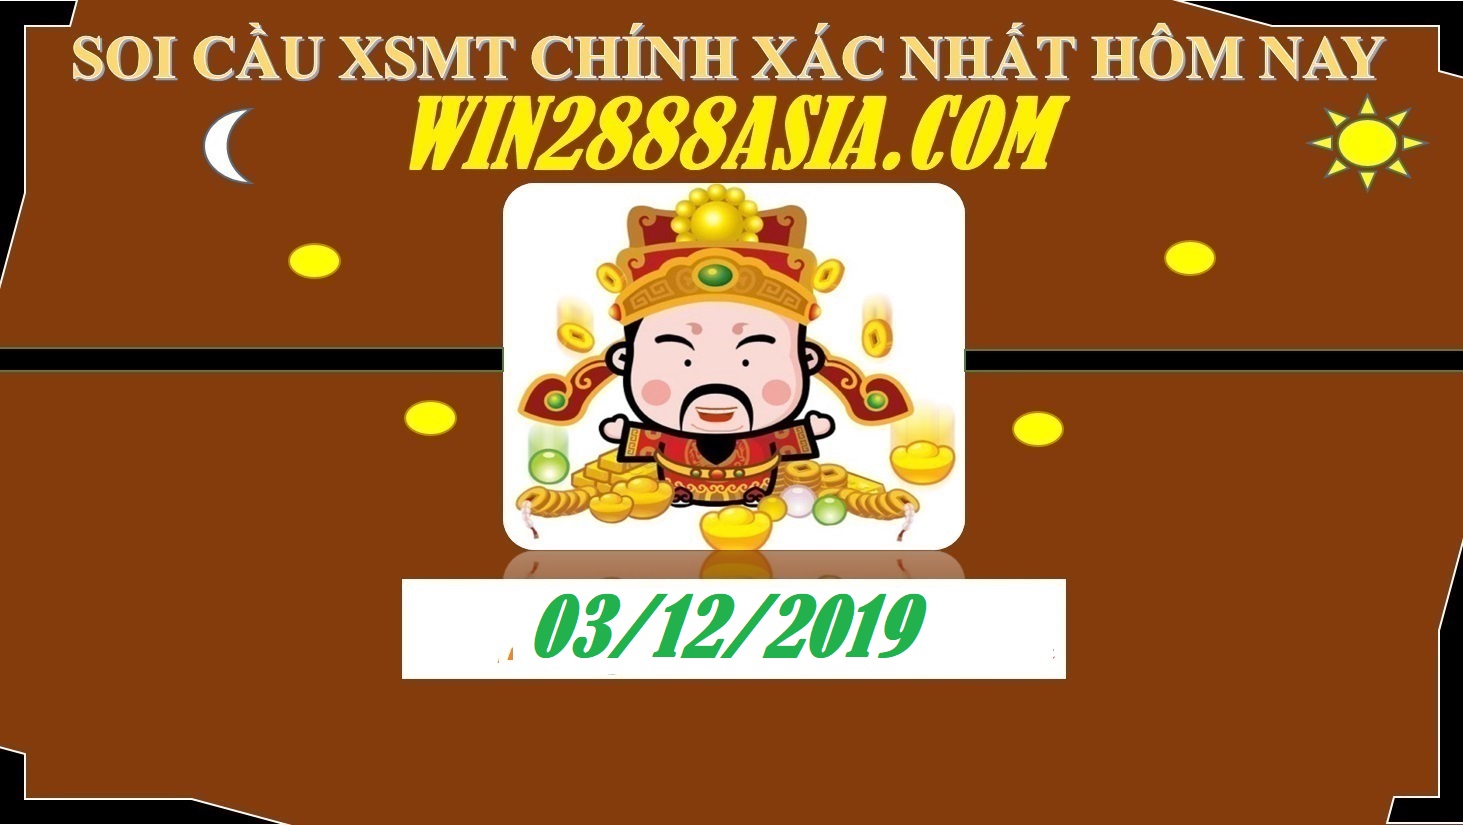 Soi cầu XSMT 3-12-2019 Win2888